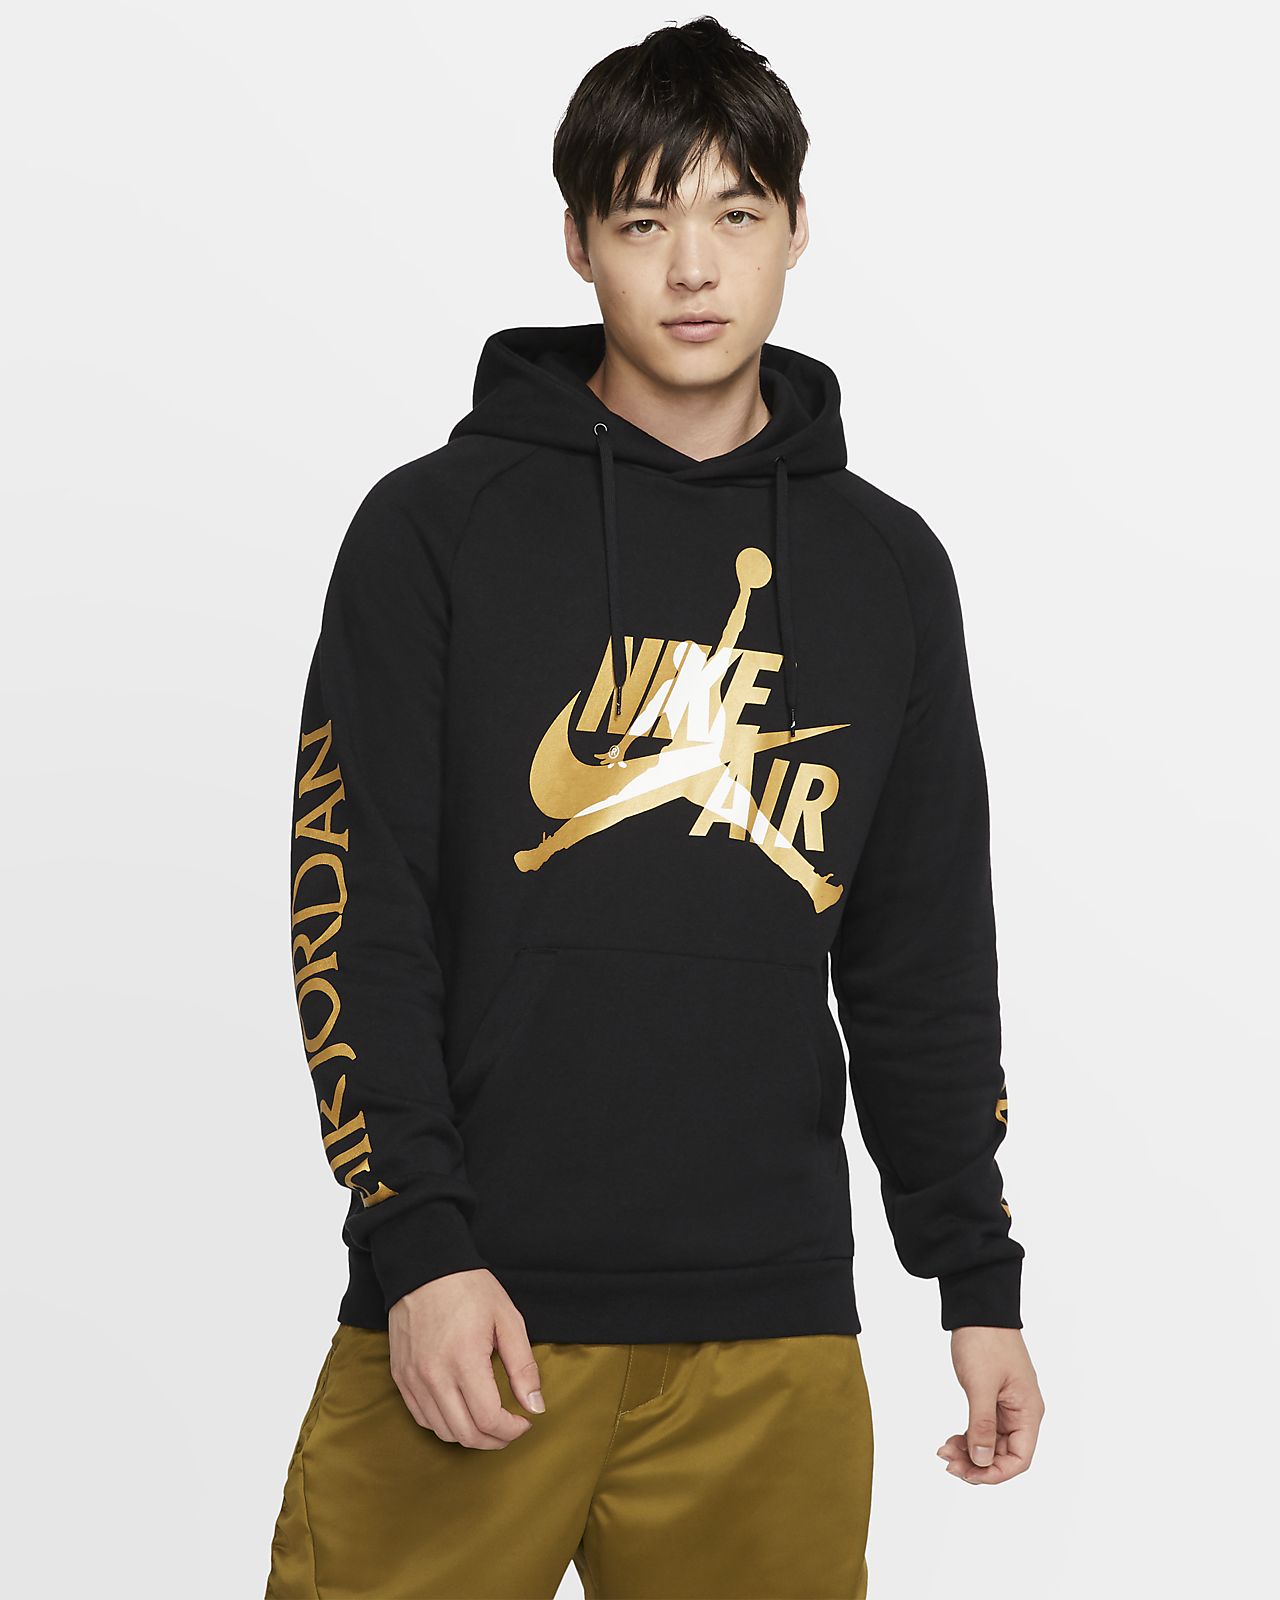 black and gold nike jordan hoodie